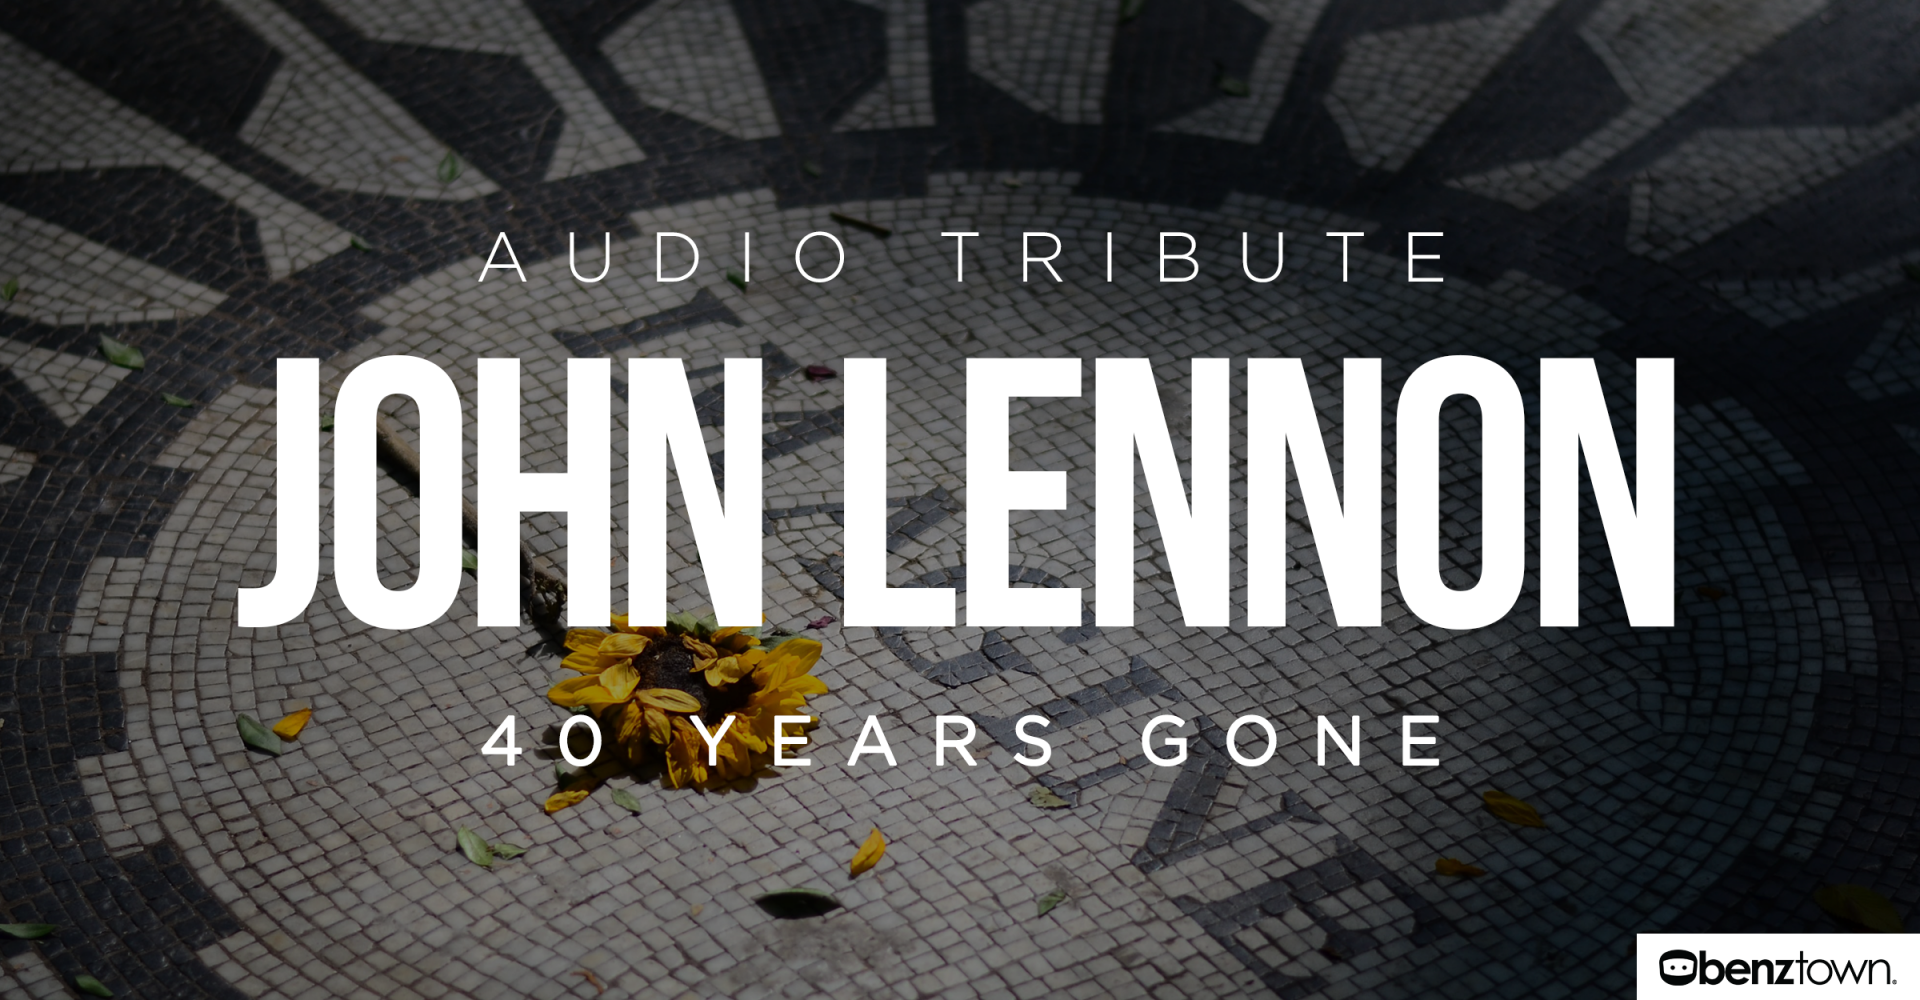 JohnLennon_Tribute